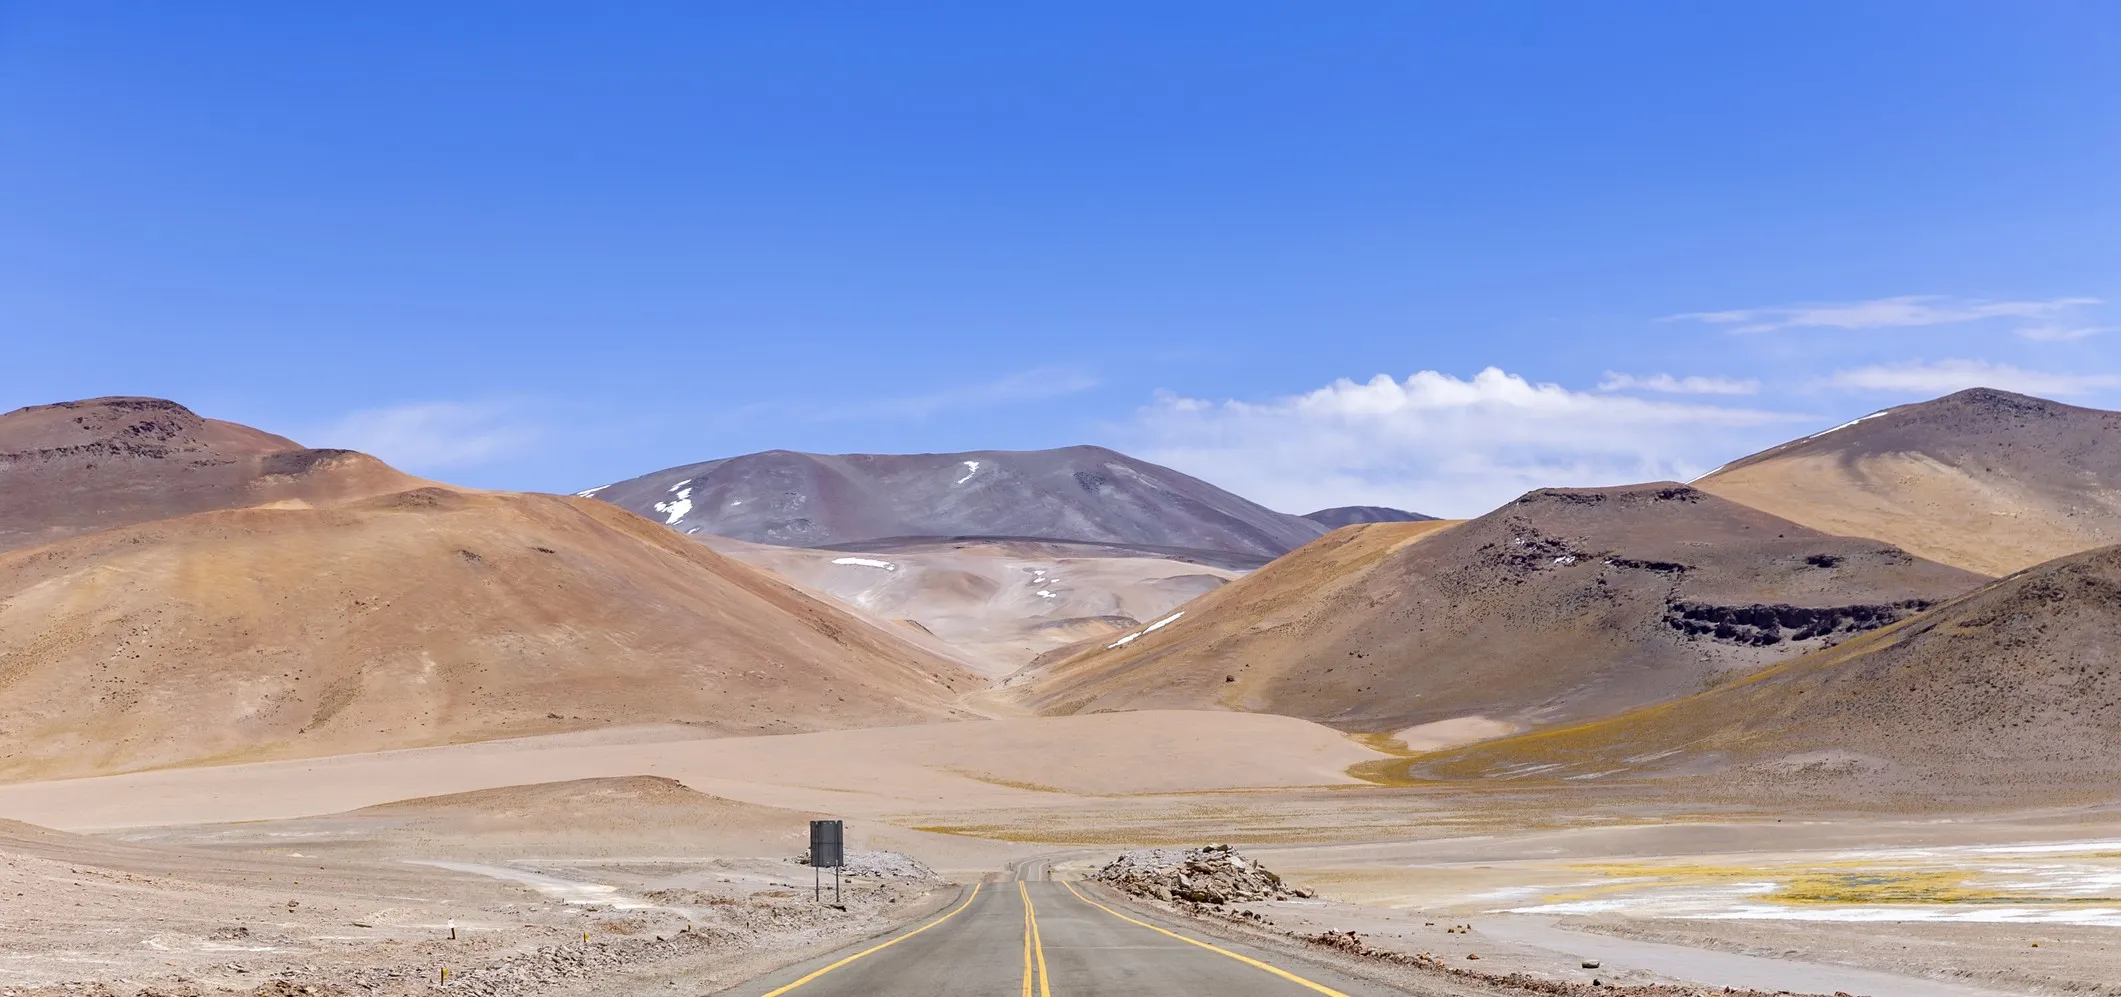 Vue depuis la Route 23, la route panoramique du nord du Chili.  © iStock / nmessana